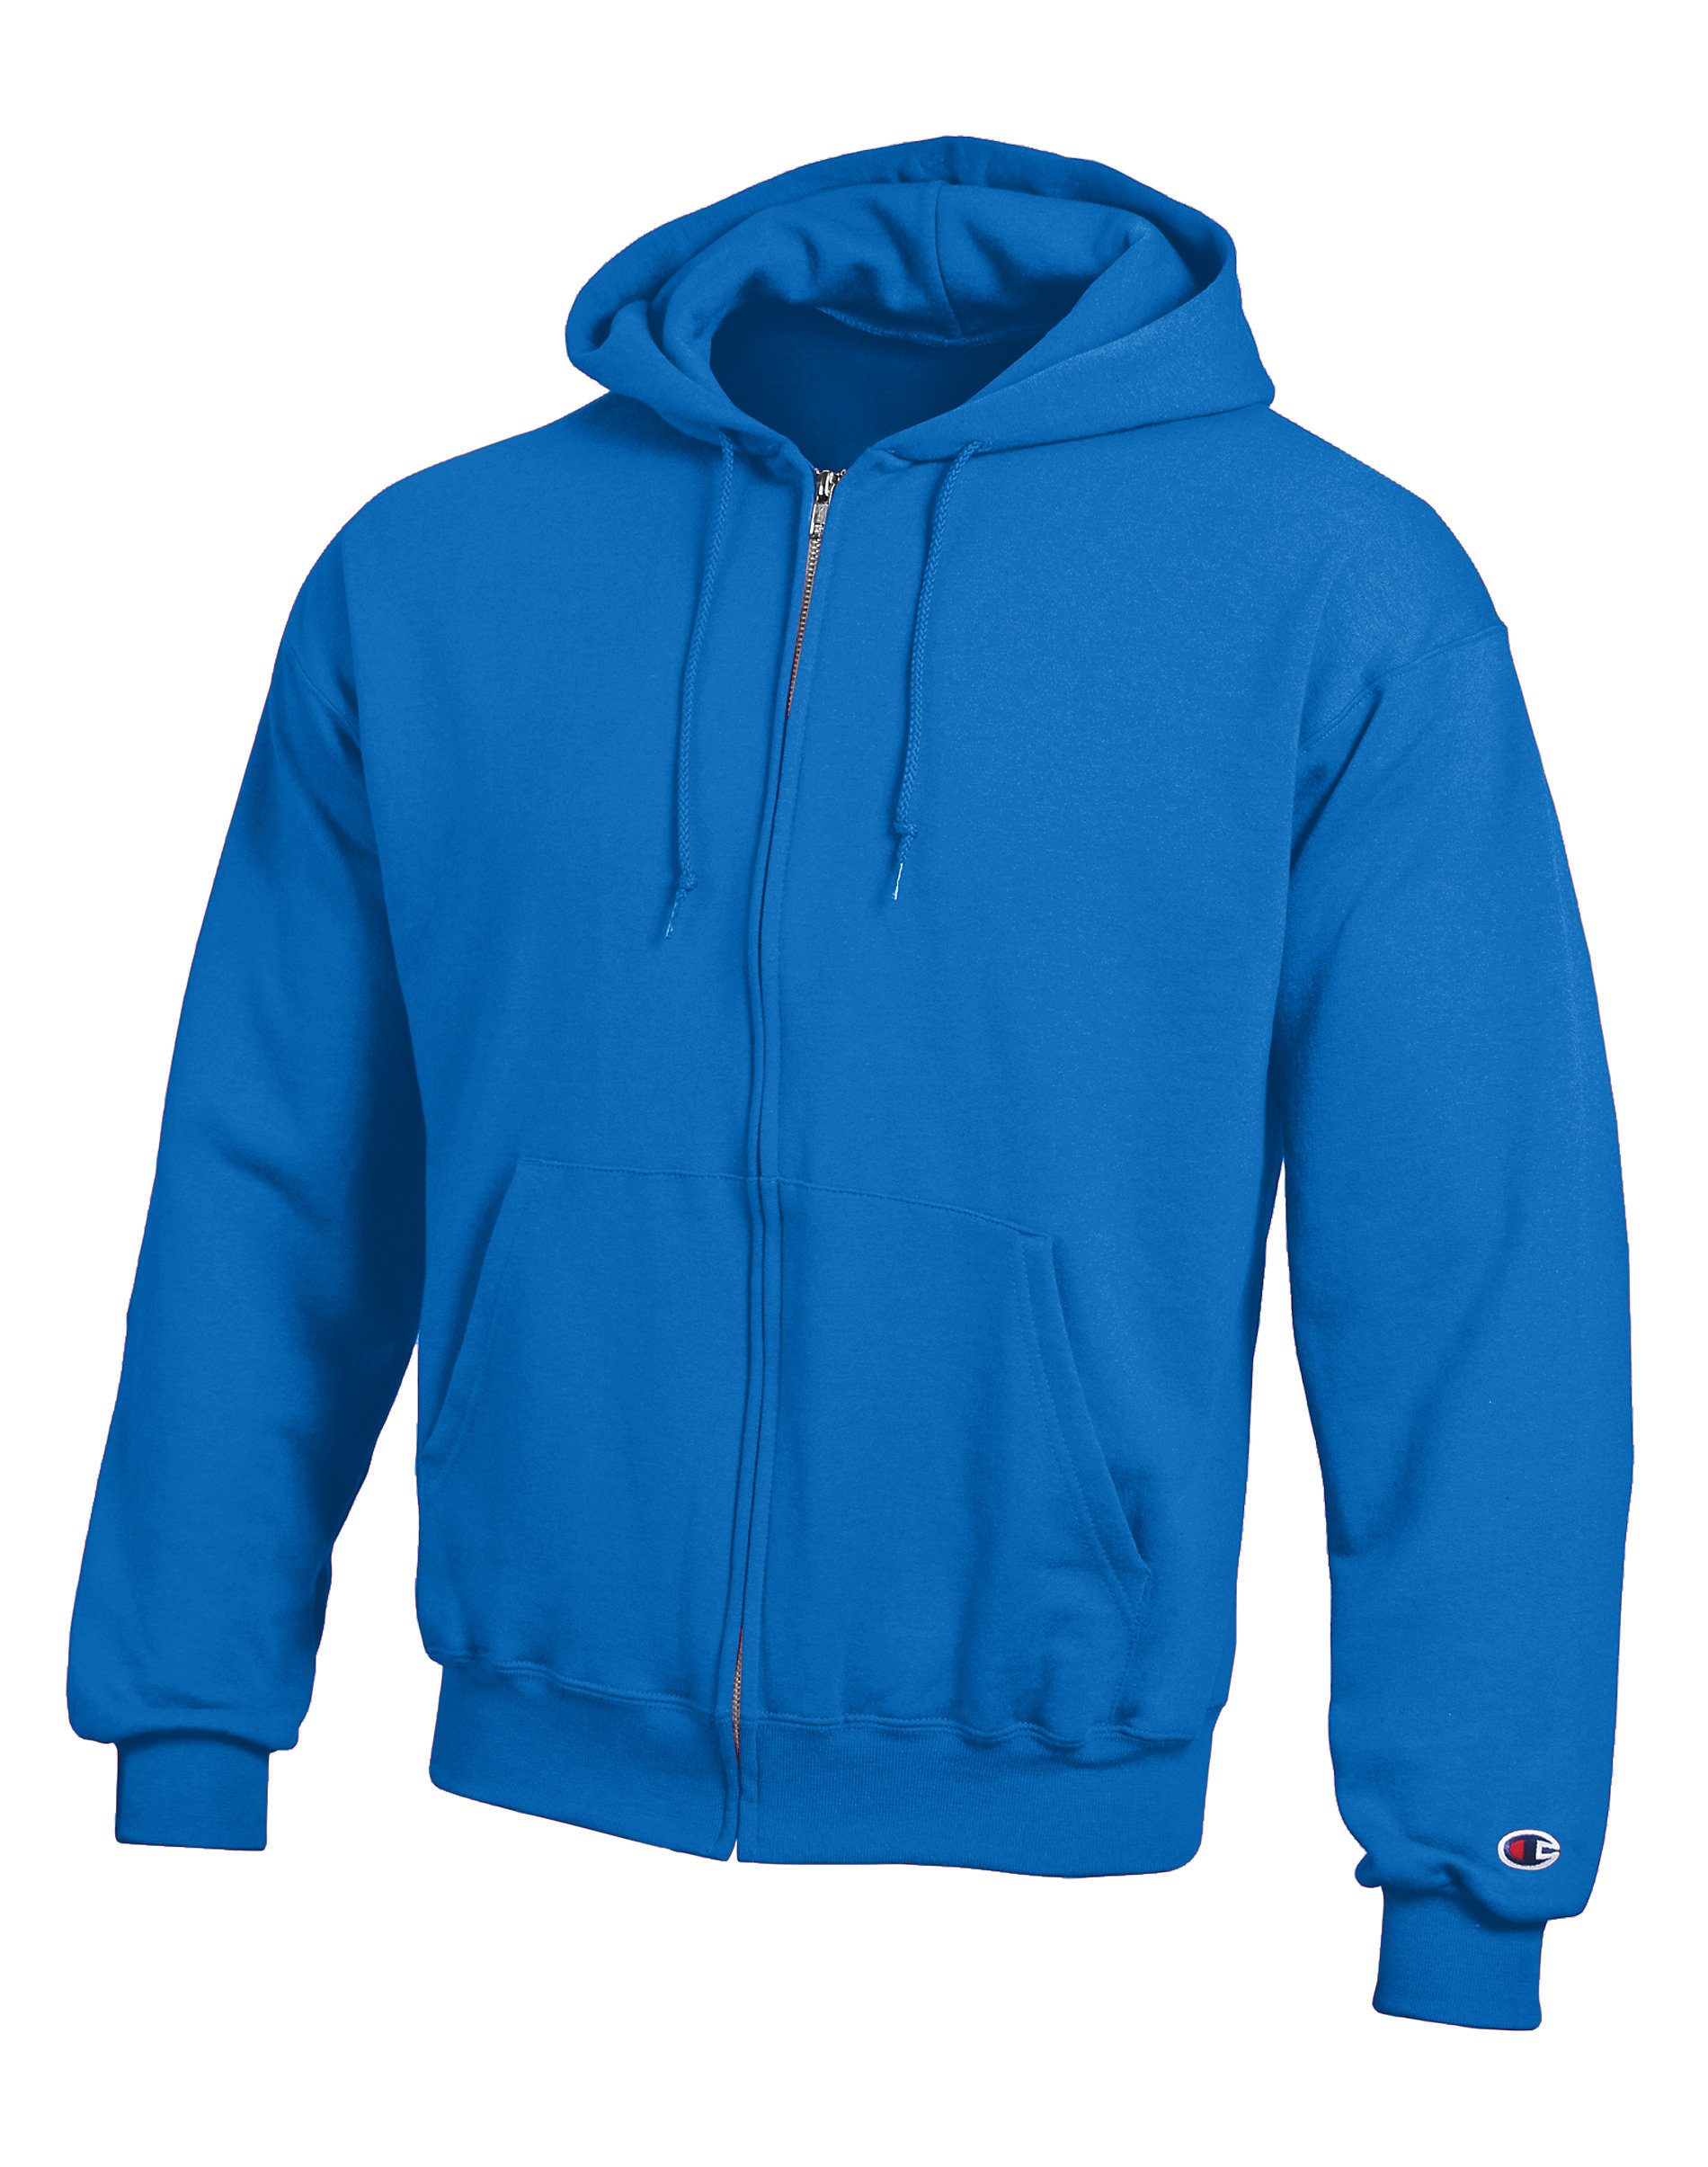 Eco Full-Zip Hooded Sweatshirt Fleece Hoodie S-3XL Sizes S800 Champion 